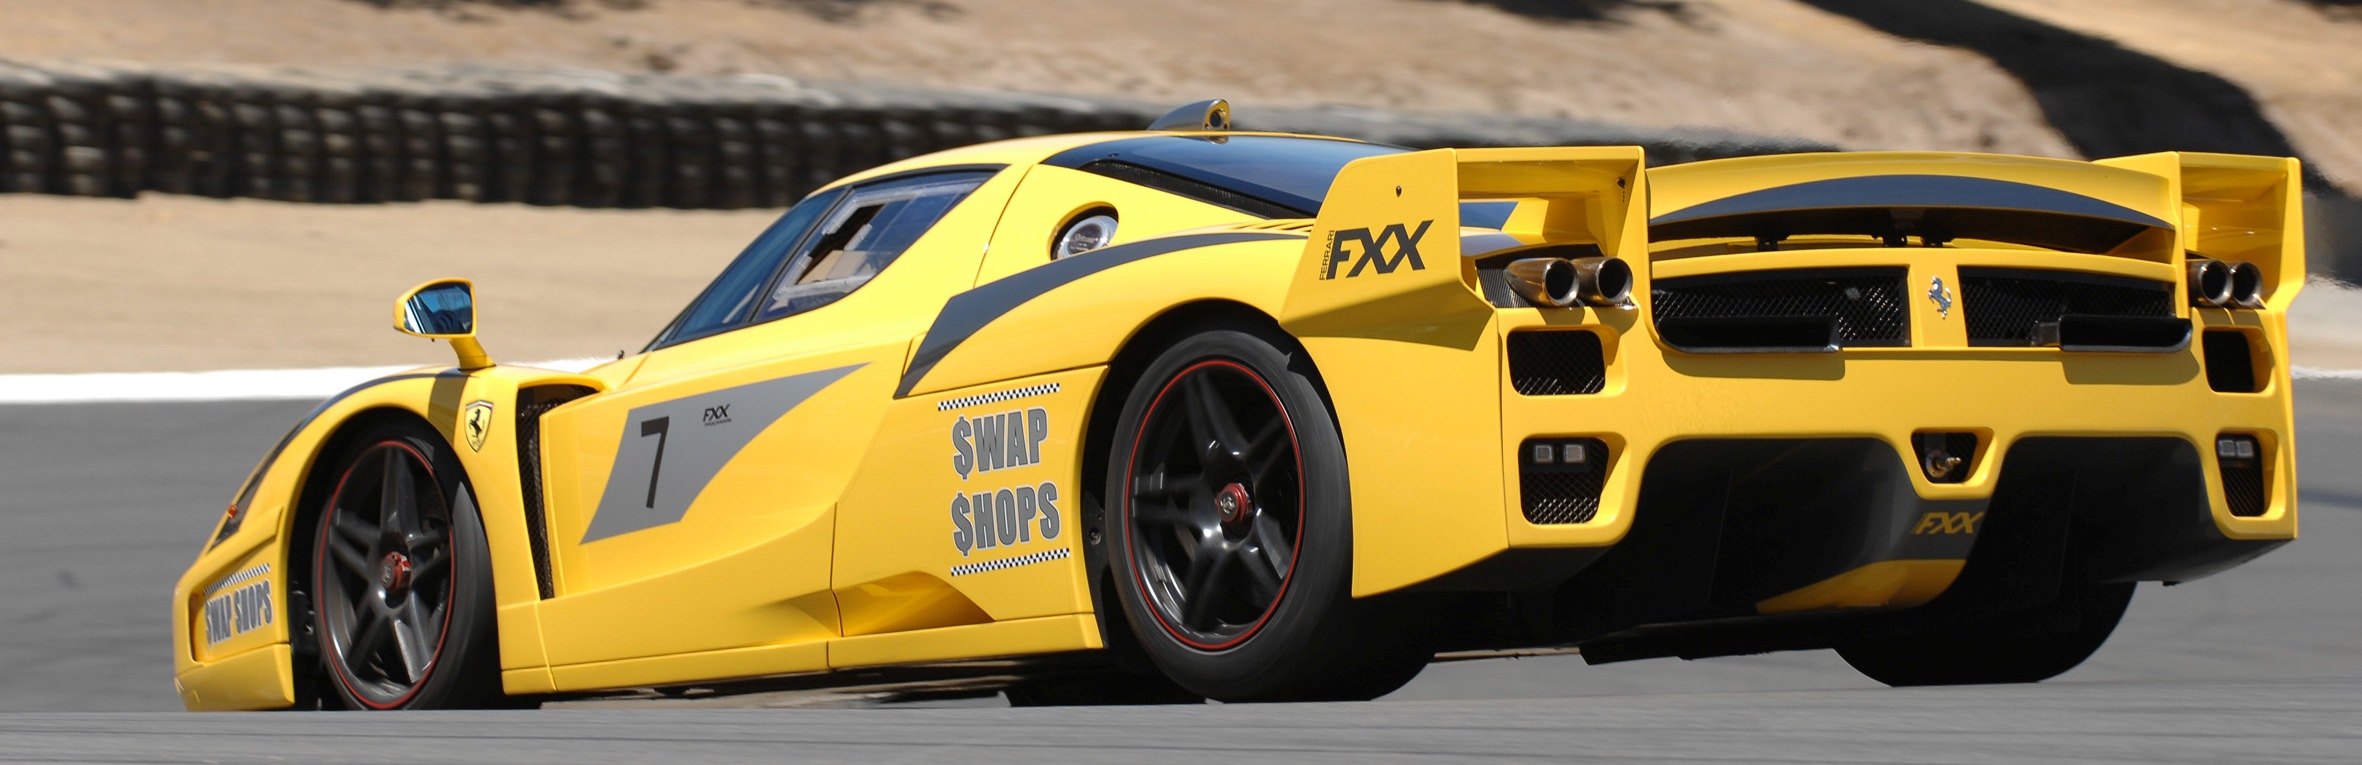 Ferrari Fxx Yellow